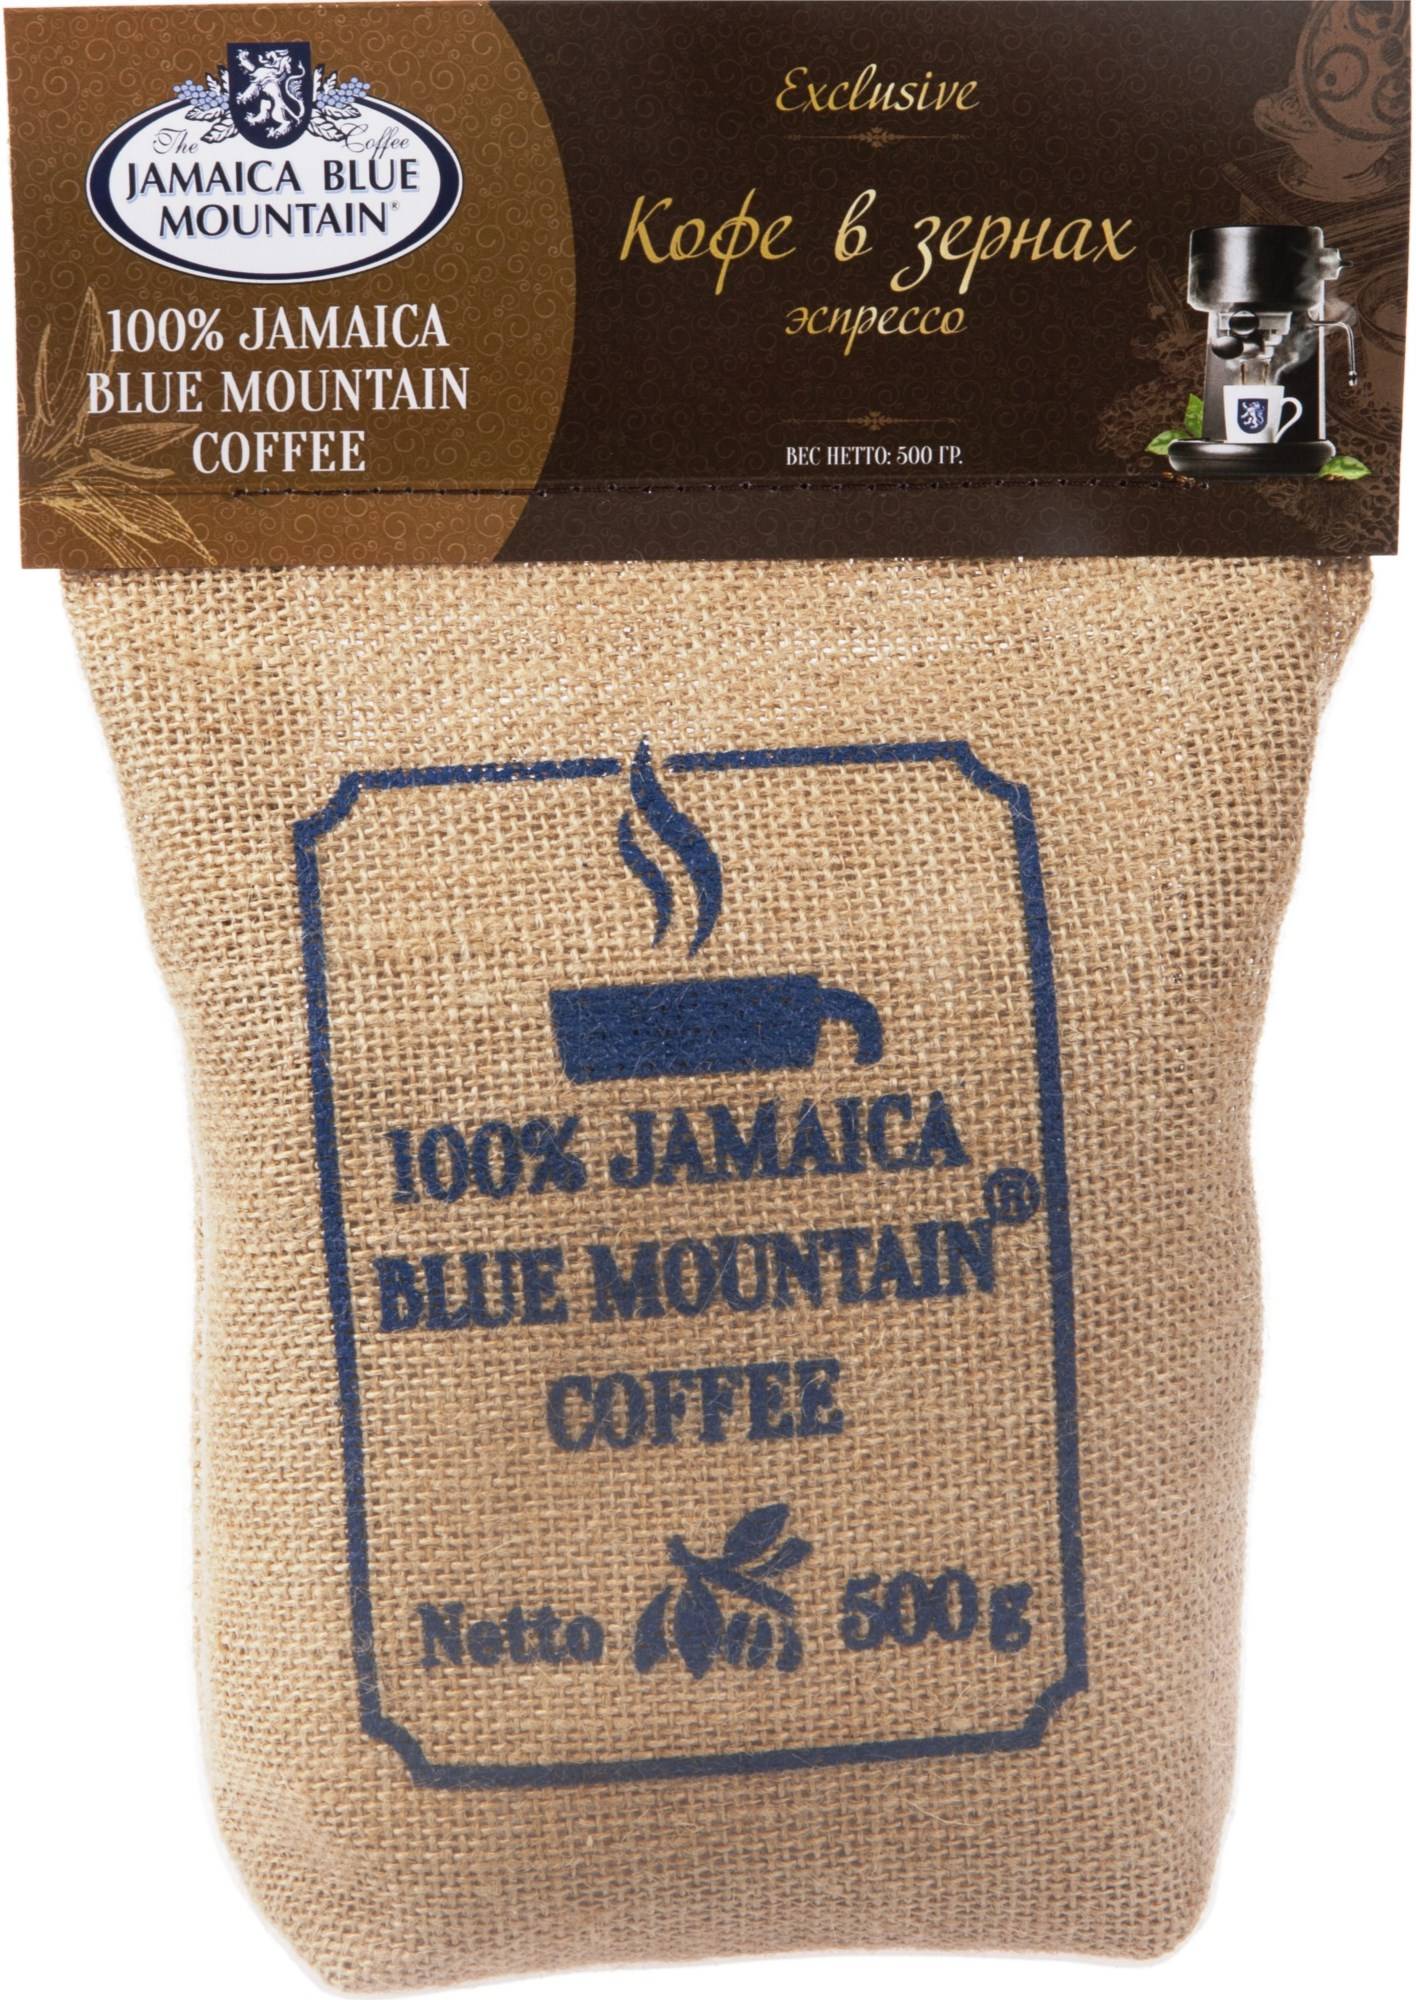 Кофе блю маунтин (blue mountain) из ямайки: описание сорта, особенности, отзывы